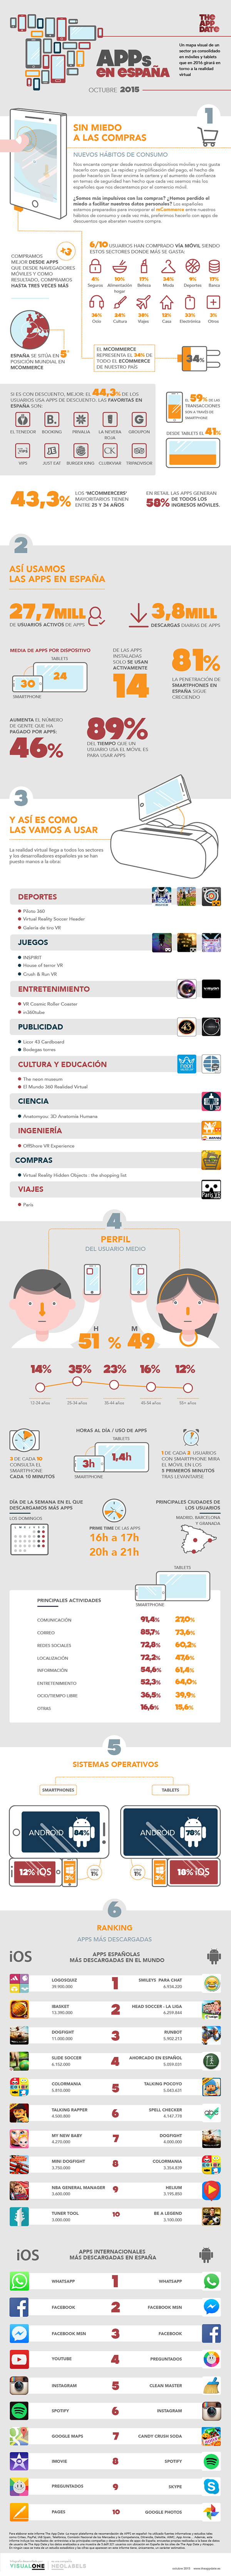 Infografía de las Apps en España 2015